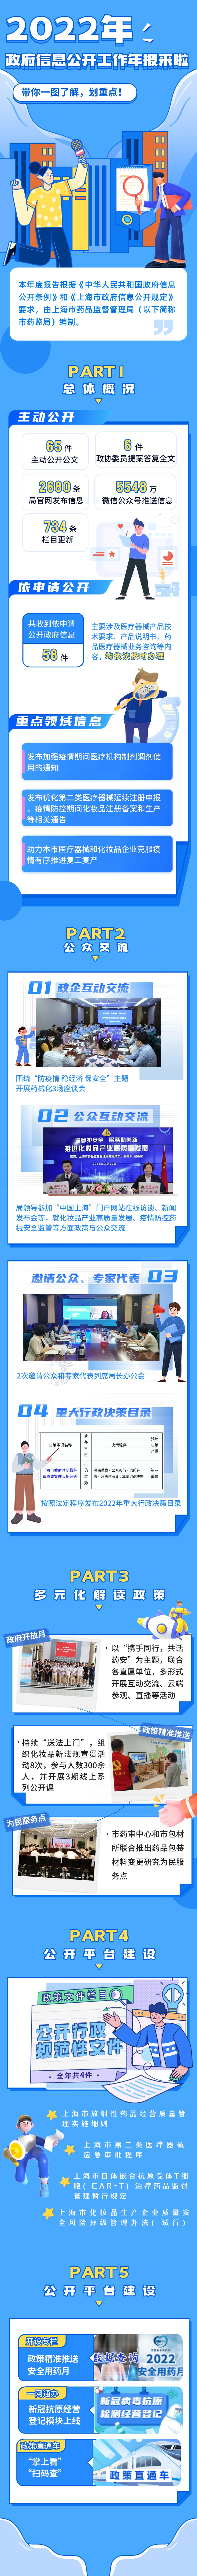 2022年上海市药品监督管理局政府信息公开工作年报来啦.jpg